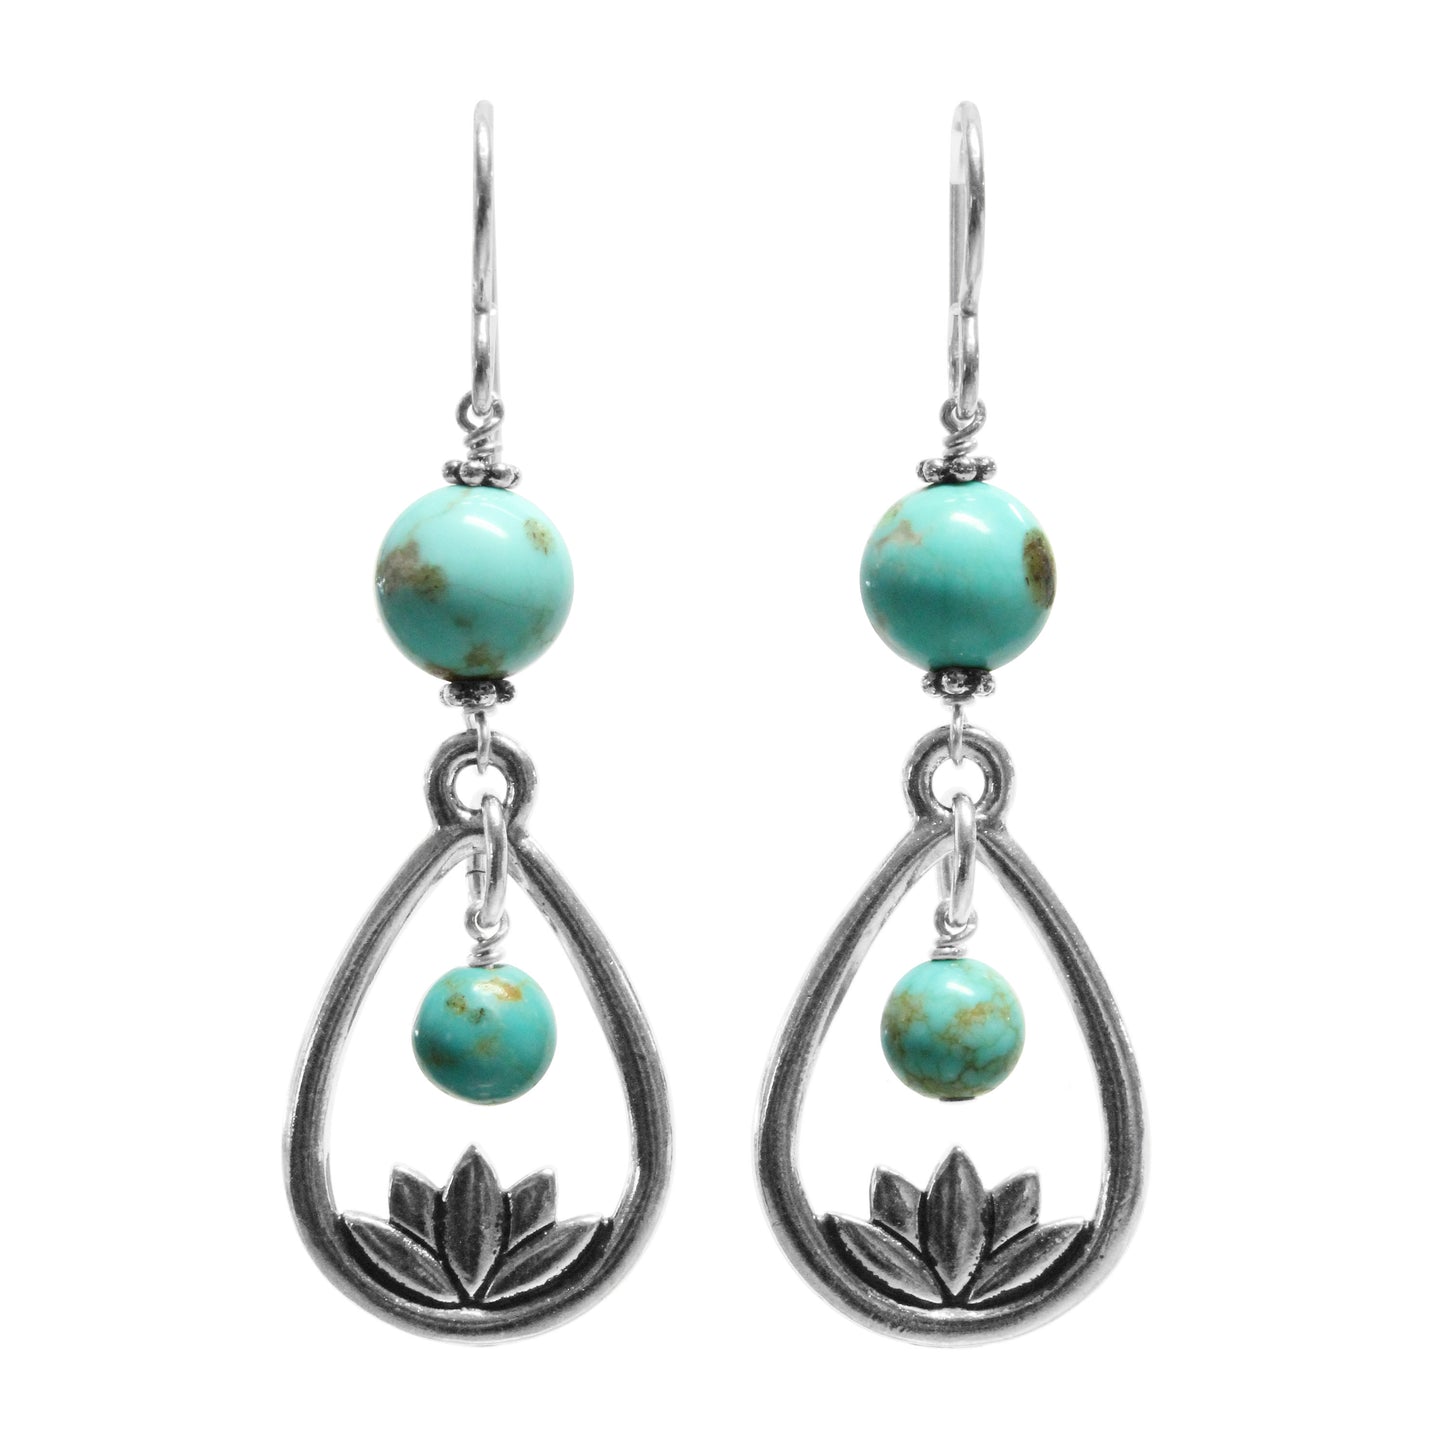 Lotus Earrings / 58mm length / #8 Mine turquoise gemstones / sterling silver hook earwires